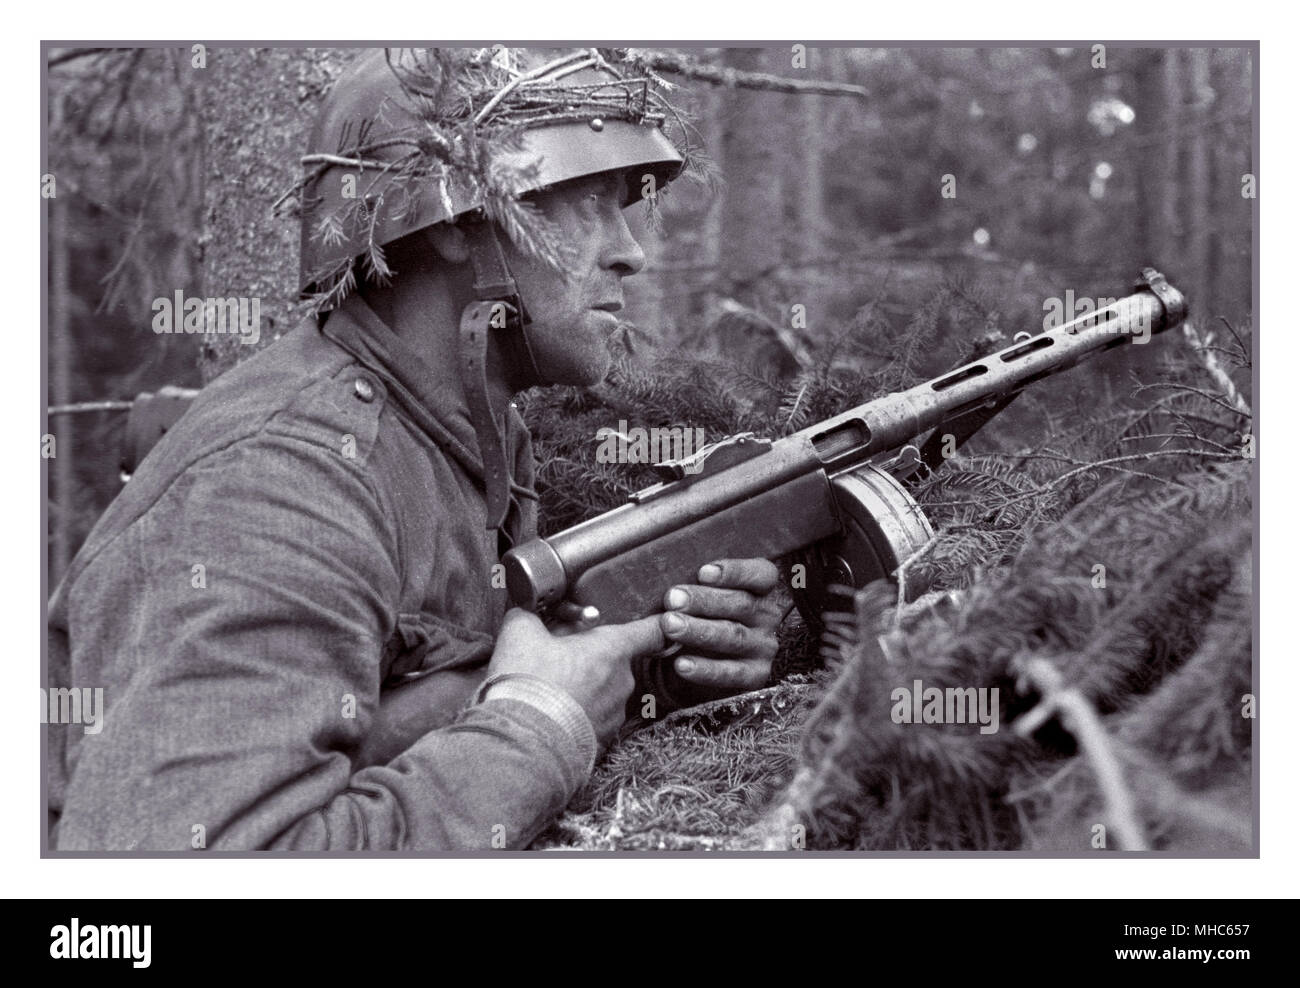 Fantassin finlandais, avec son K31 Suomi sous-machine gun la lutte contre l'invasion russe. La Guerre de continuation d'un conflit se sont battus par co-belligérants de la Finlande et de l'Allemagne nazie contre l'Union soviétique (URSS) de 1941 à 1944 durant la Seconde Guerre mondiale . Dans l'historiographie russe, la guerre s'appelle le Front Soviétique-finlandais de la Grande guerre patriotique. Banque D'Images